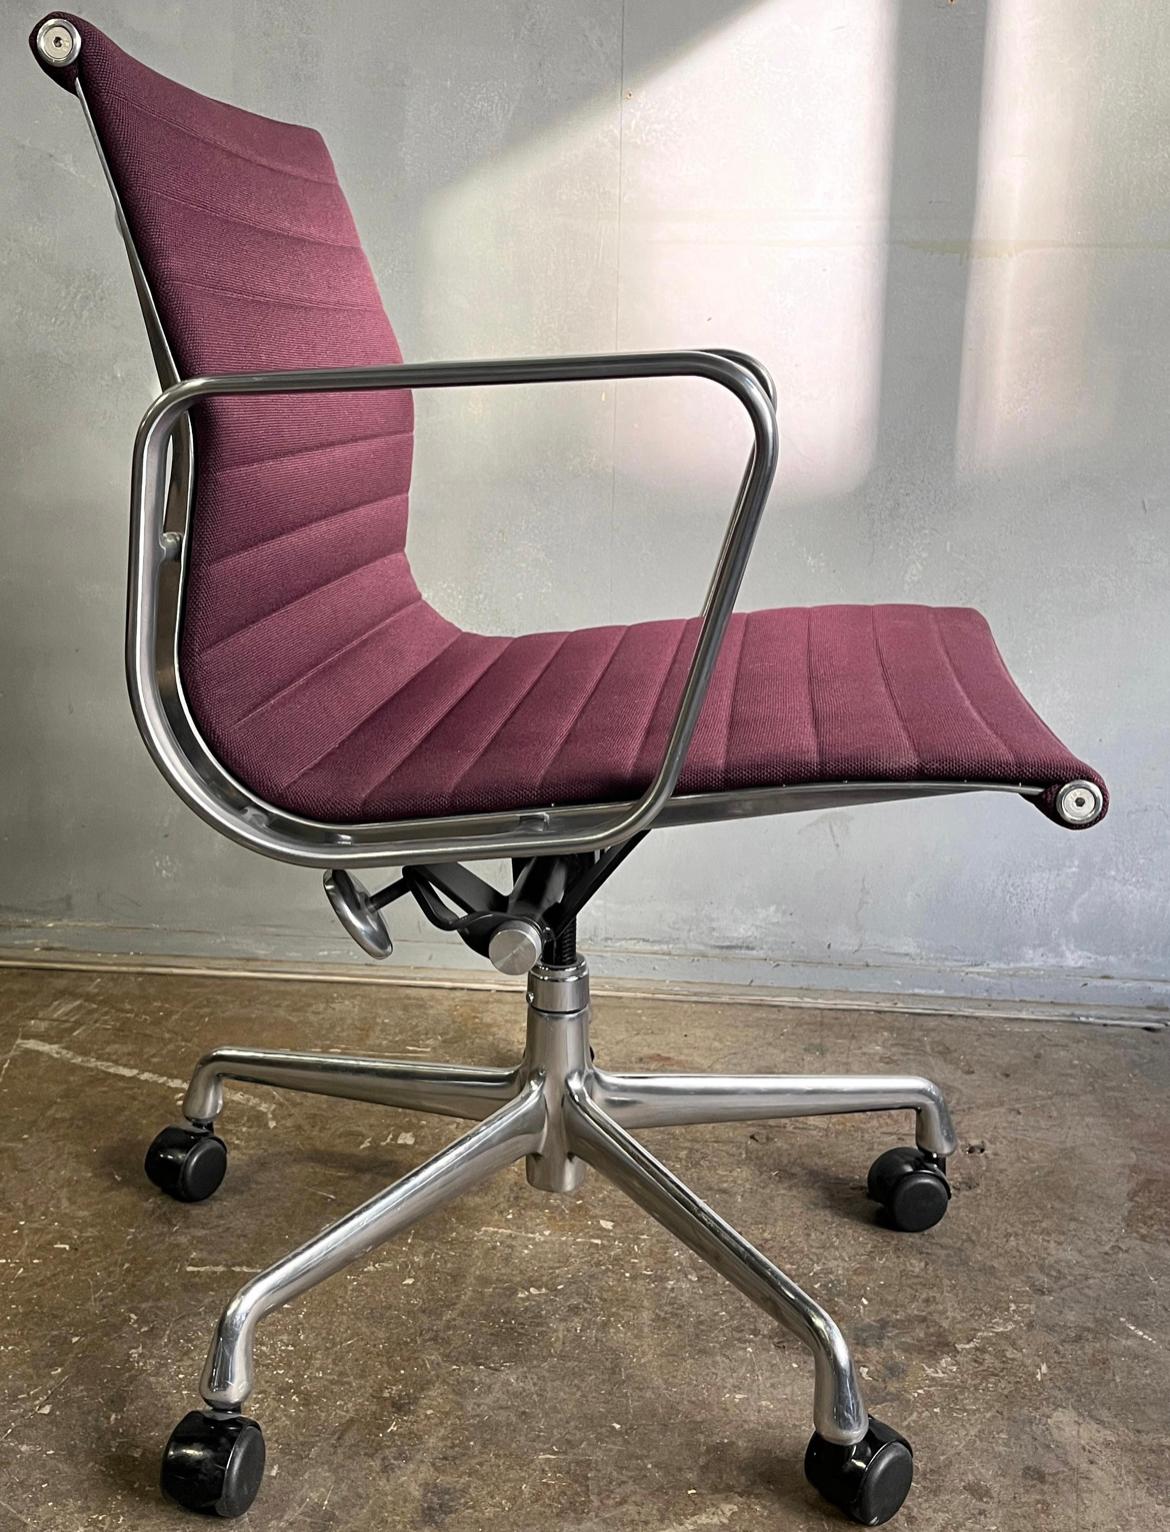 Para tu consideración están estas sillas del Grupo Eames de Aluminio tapizadas en una preciosa tela morada. Elegancia y comodidad separan a esta silla icónica del resto. La tapicería está en magníficas condiciones, con los brazos con algunos